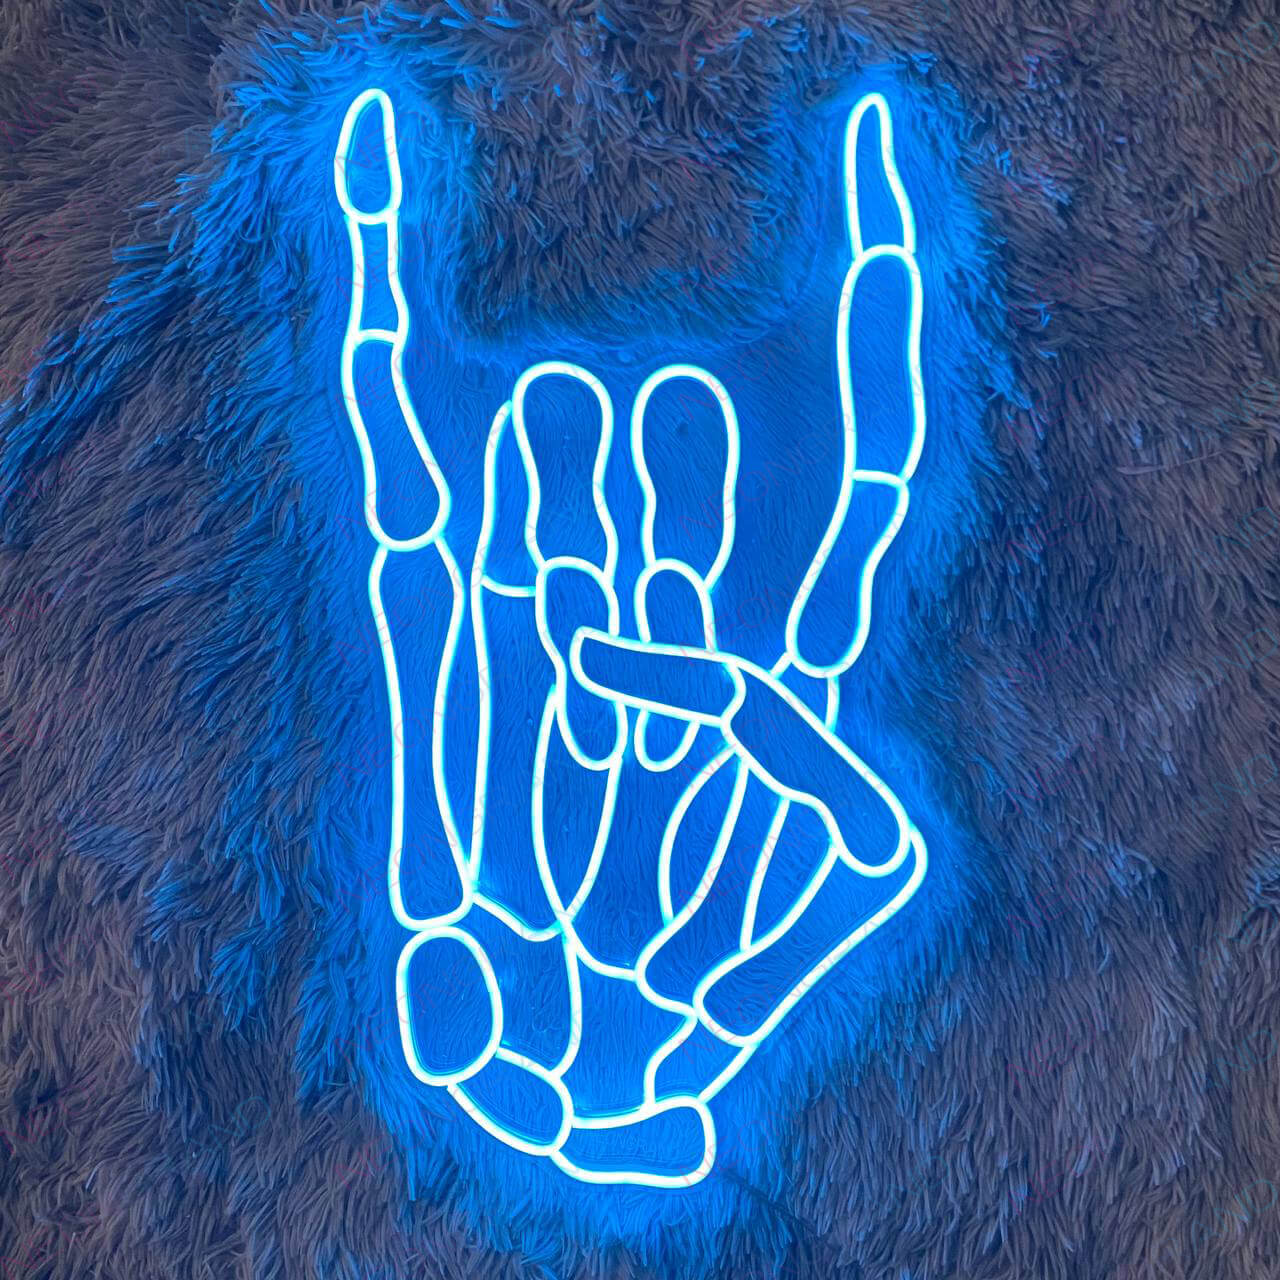 Rock N Roll Neon Sign Skeleton Hand Led Light light blue wm